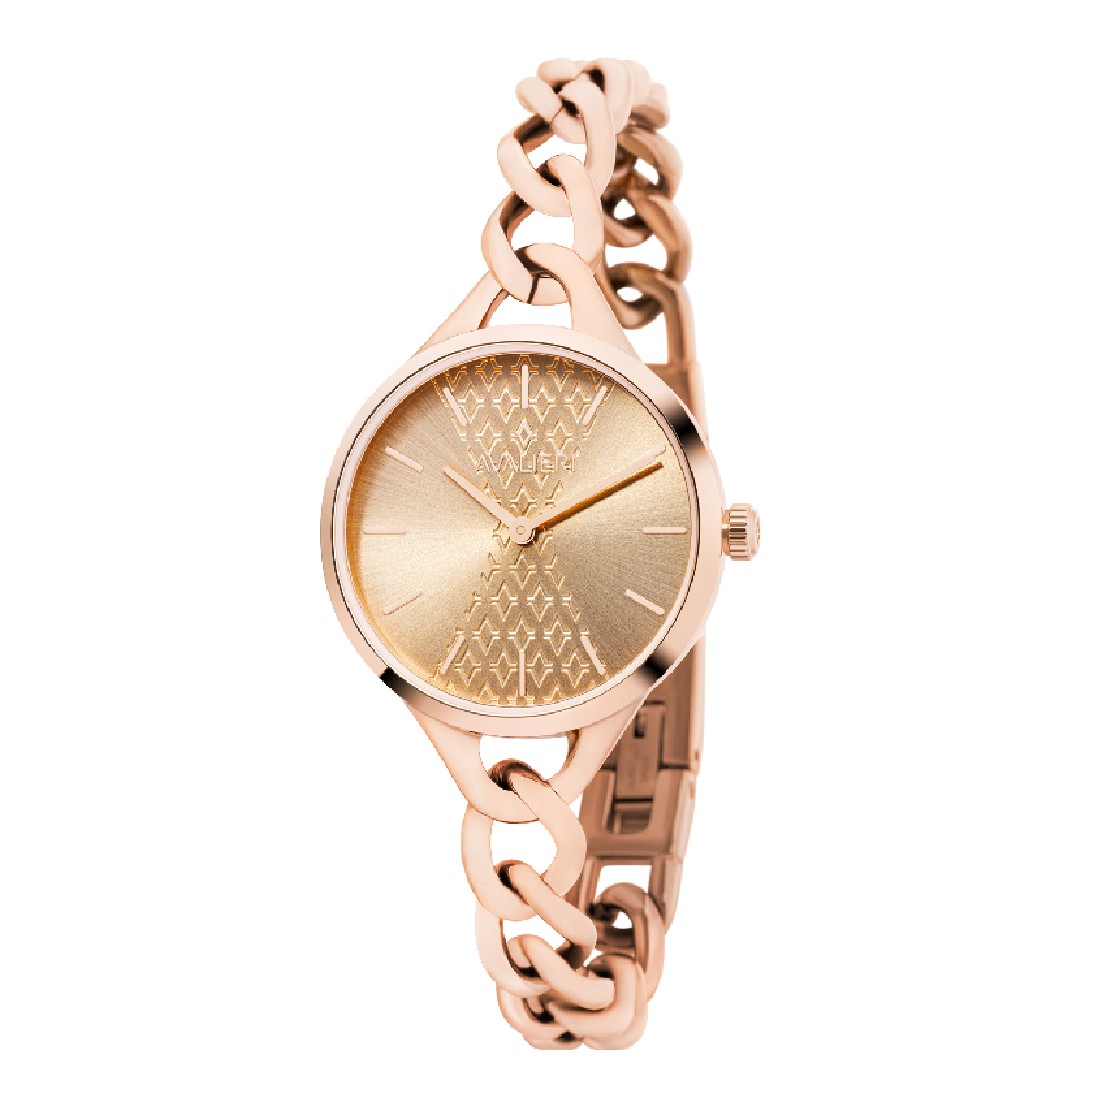 Avalieri Women's Quartz Watch Rose Gold Dial - AV-2334B